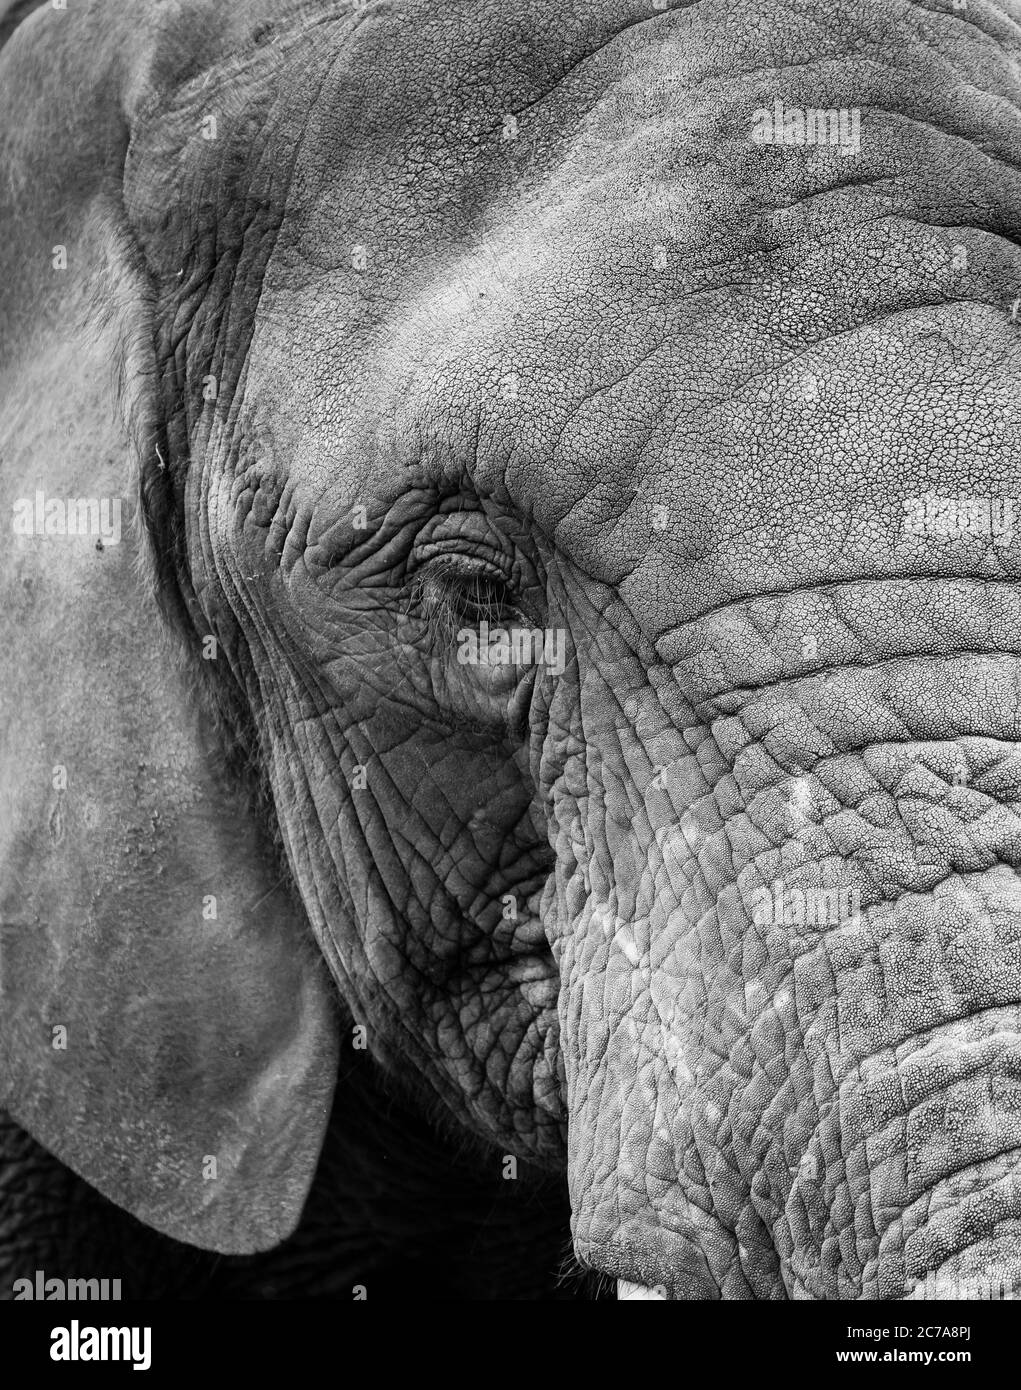 Vue détaillée, monochrome, tête gros plan d'un éléphant d'Afrique (Loxodonta africana) isolé en plein air à West Midland Safari Park, Royaume-Uni. Banque D'Images